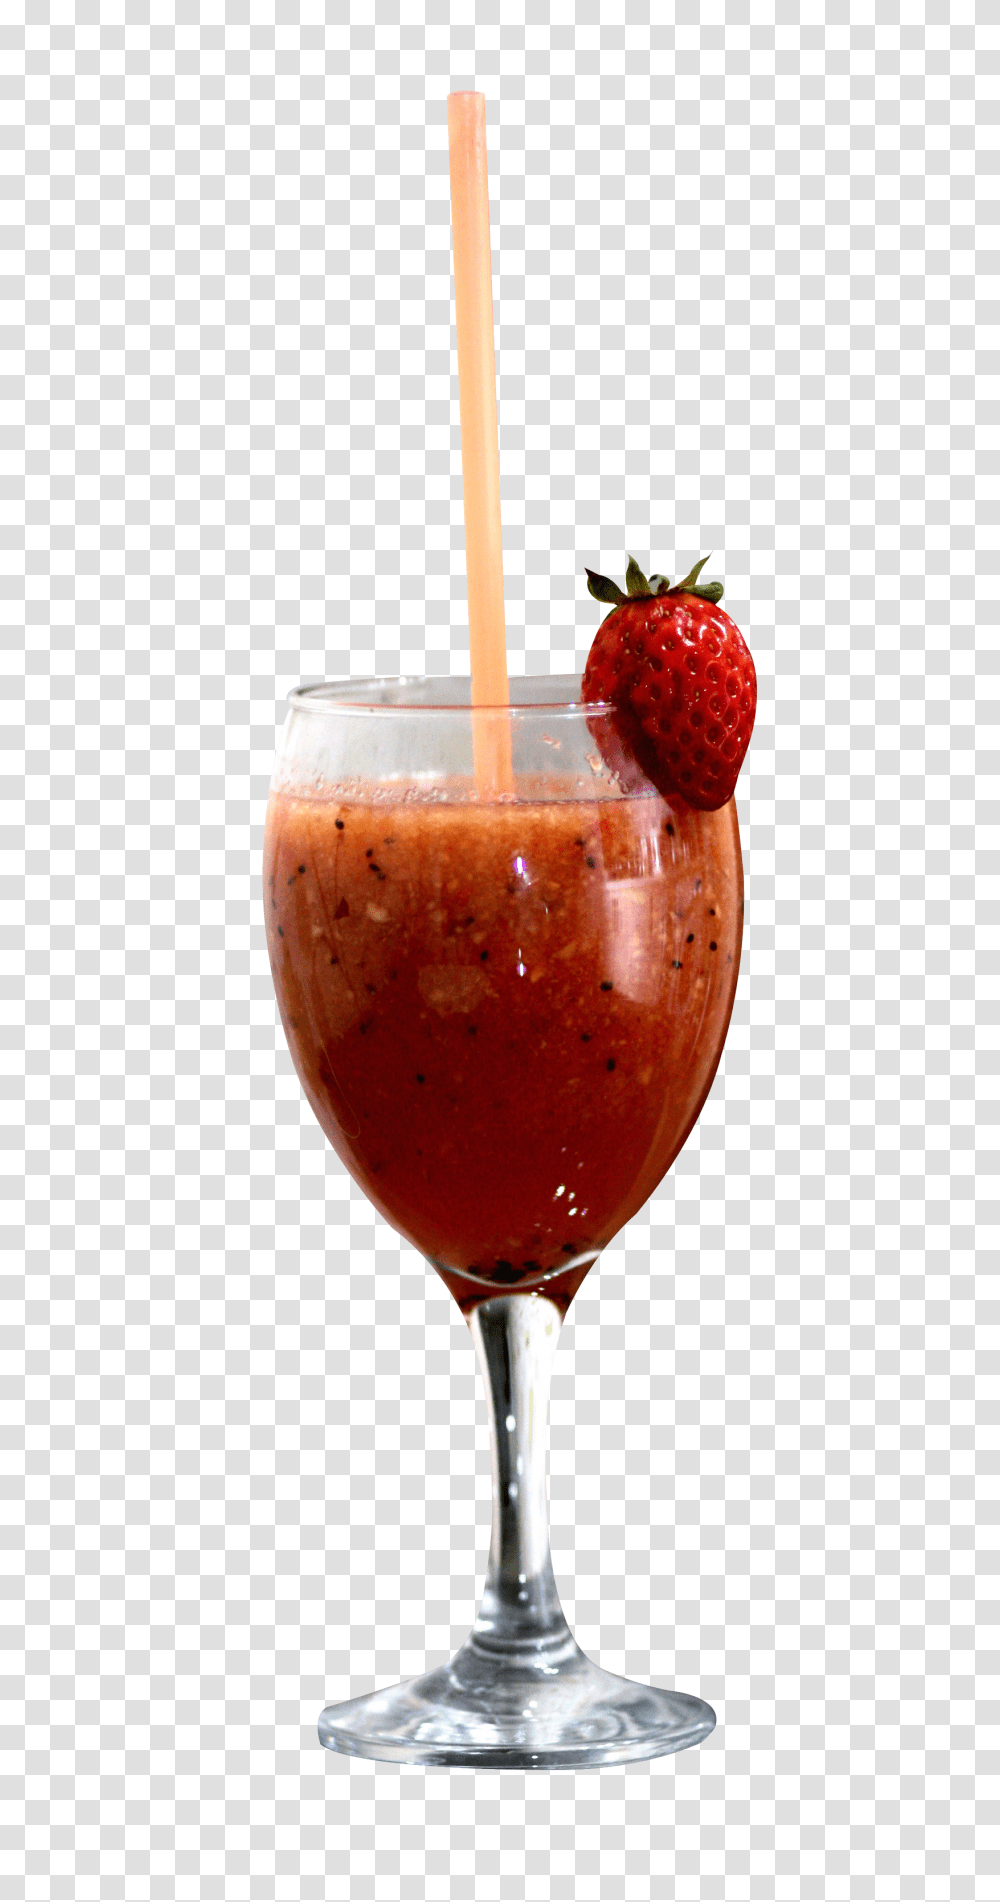 Cocktail Image, Drink, Juice, Beverage, Strawberry Transparent Png